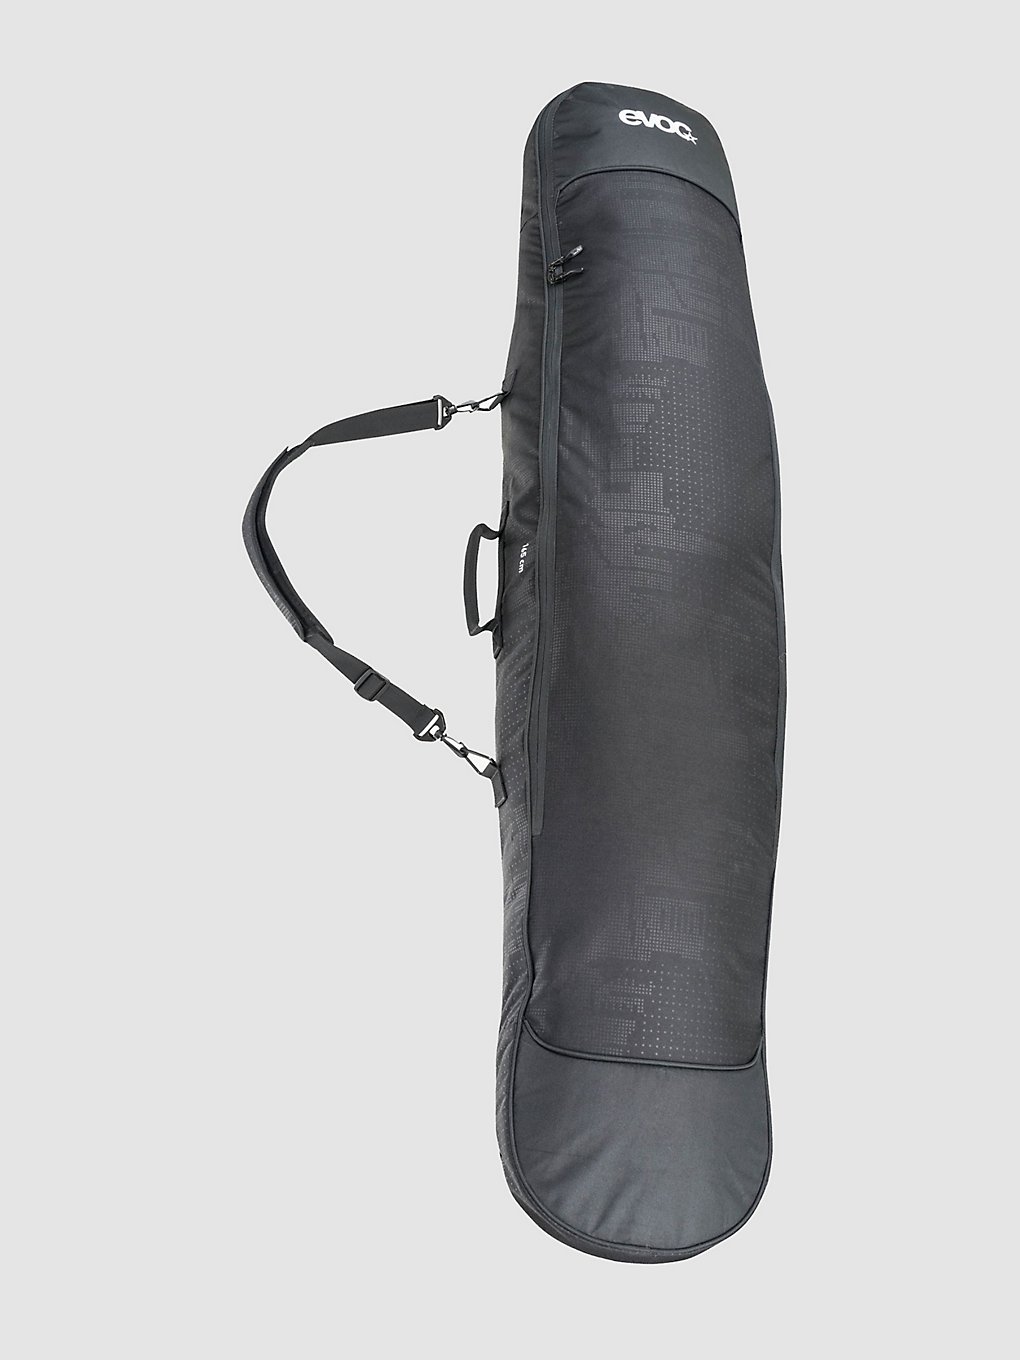 Evoc 165cm Snowboard-Tasche black kaufen